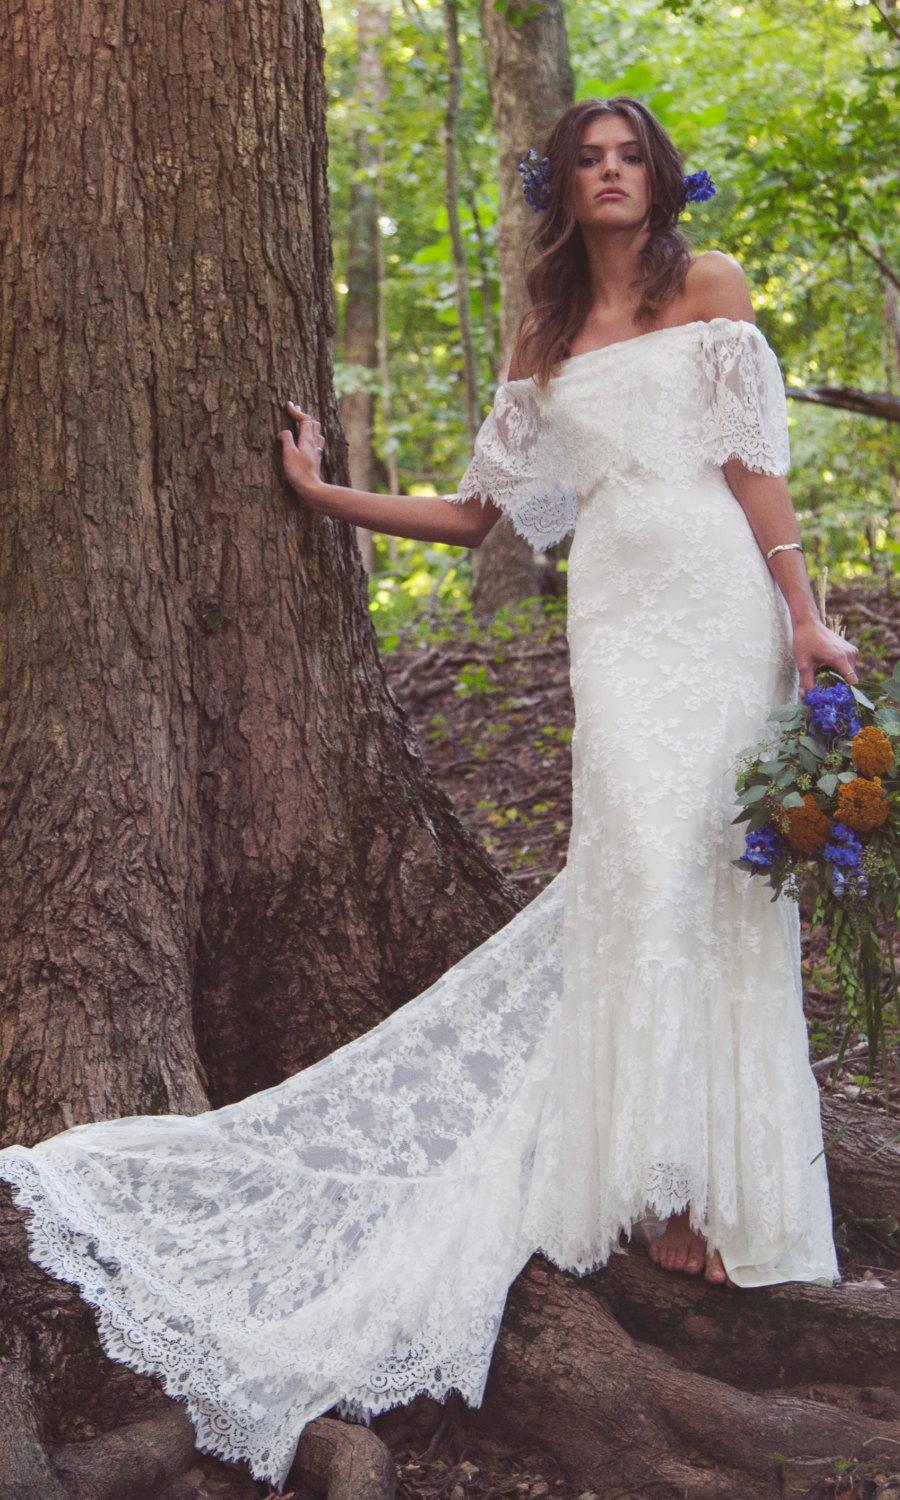 زفاف - Off The Shoulder Wedding Dress, Lace Bridal Gown, Scalloped Lace Wedding Dress, Vintage Inspired Gown - "Laurence"